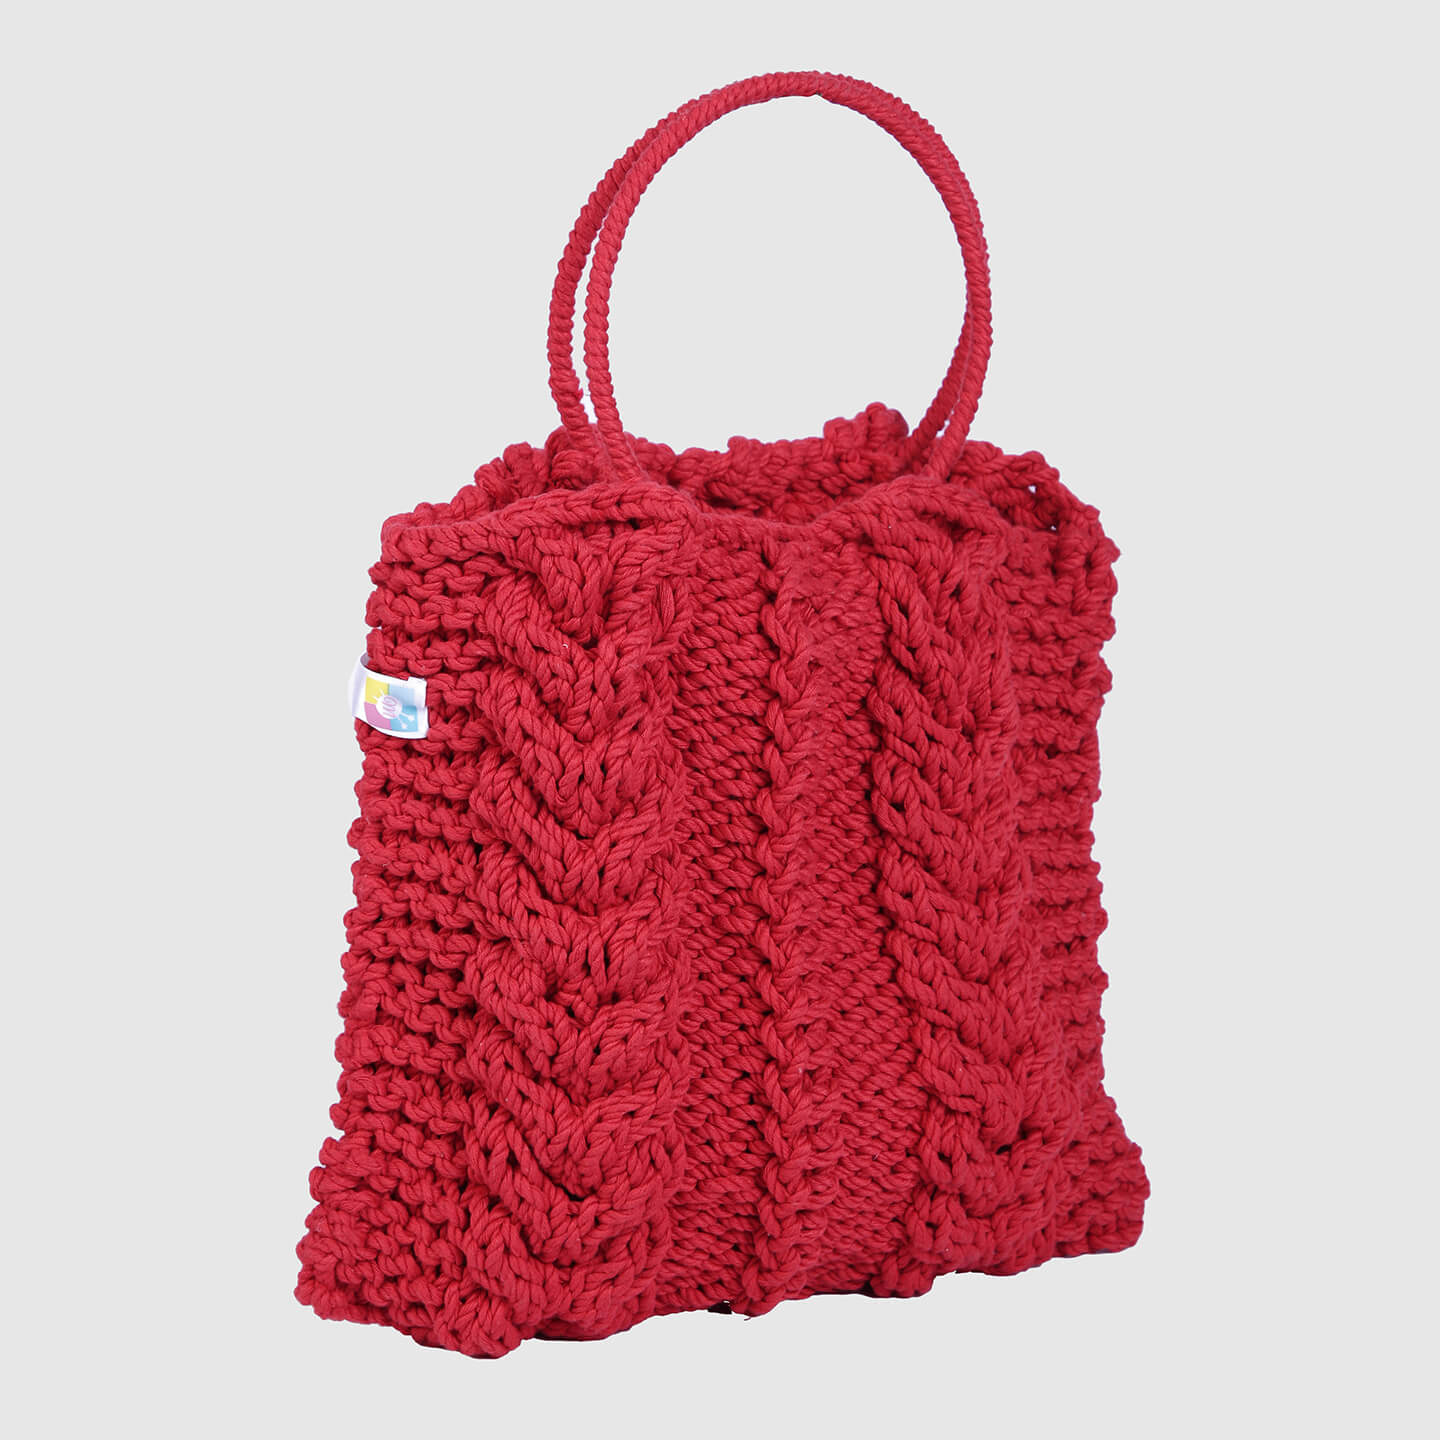 Handmade Crochet Bag - Red 3128